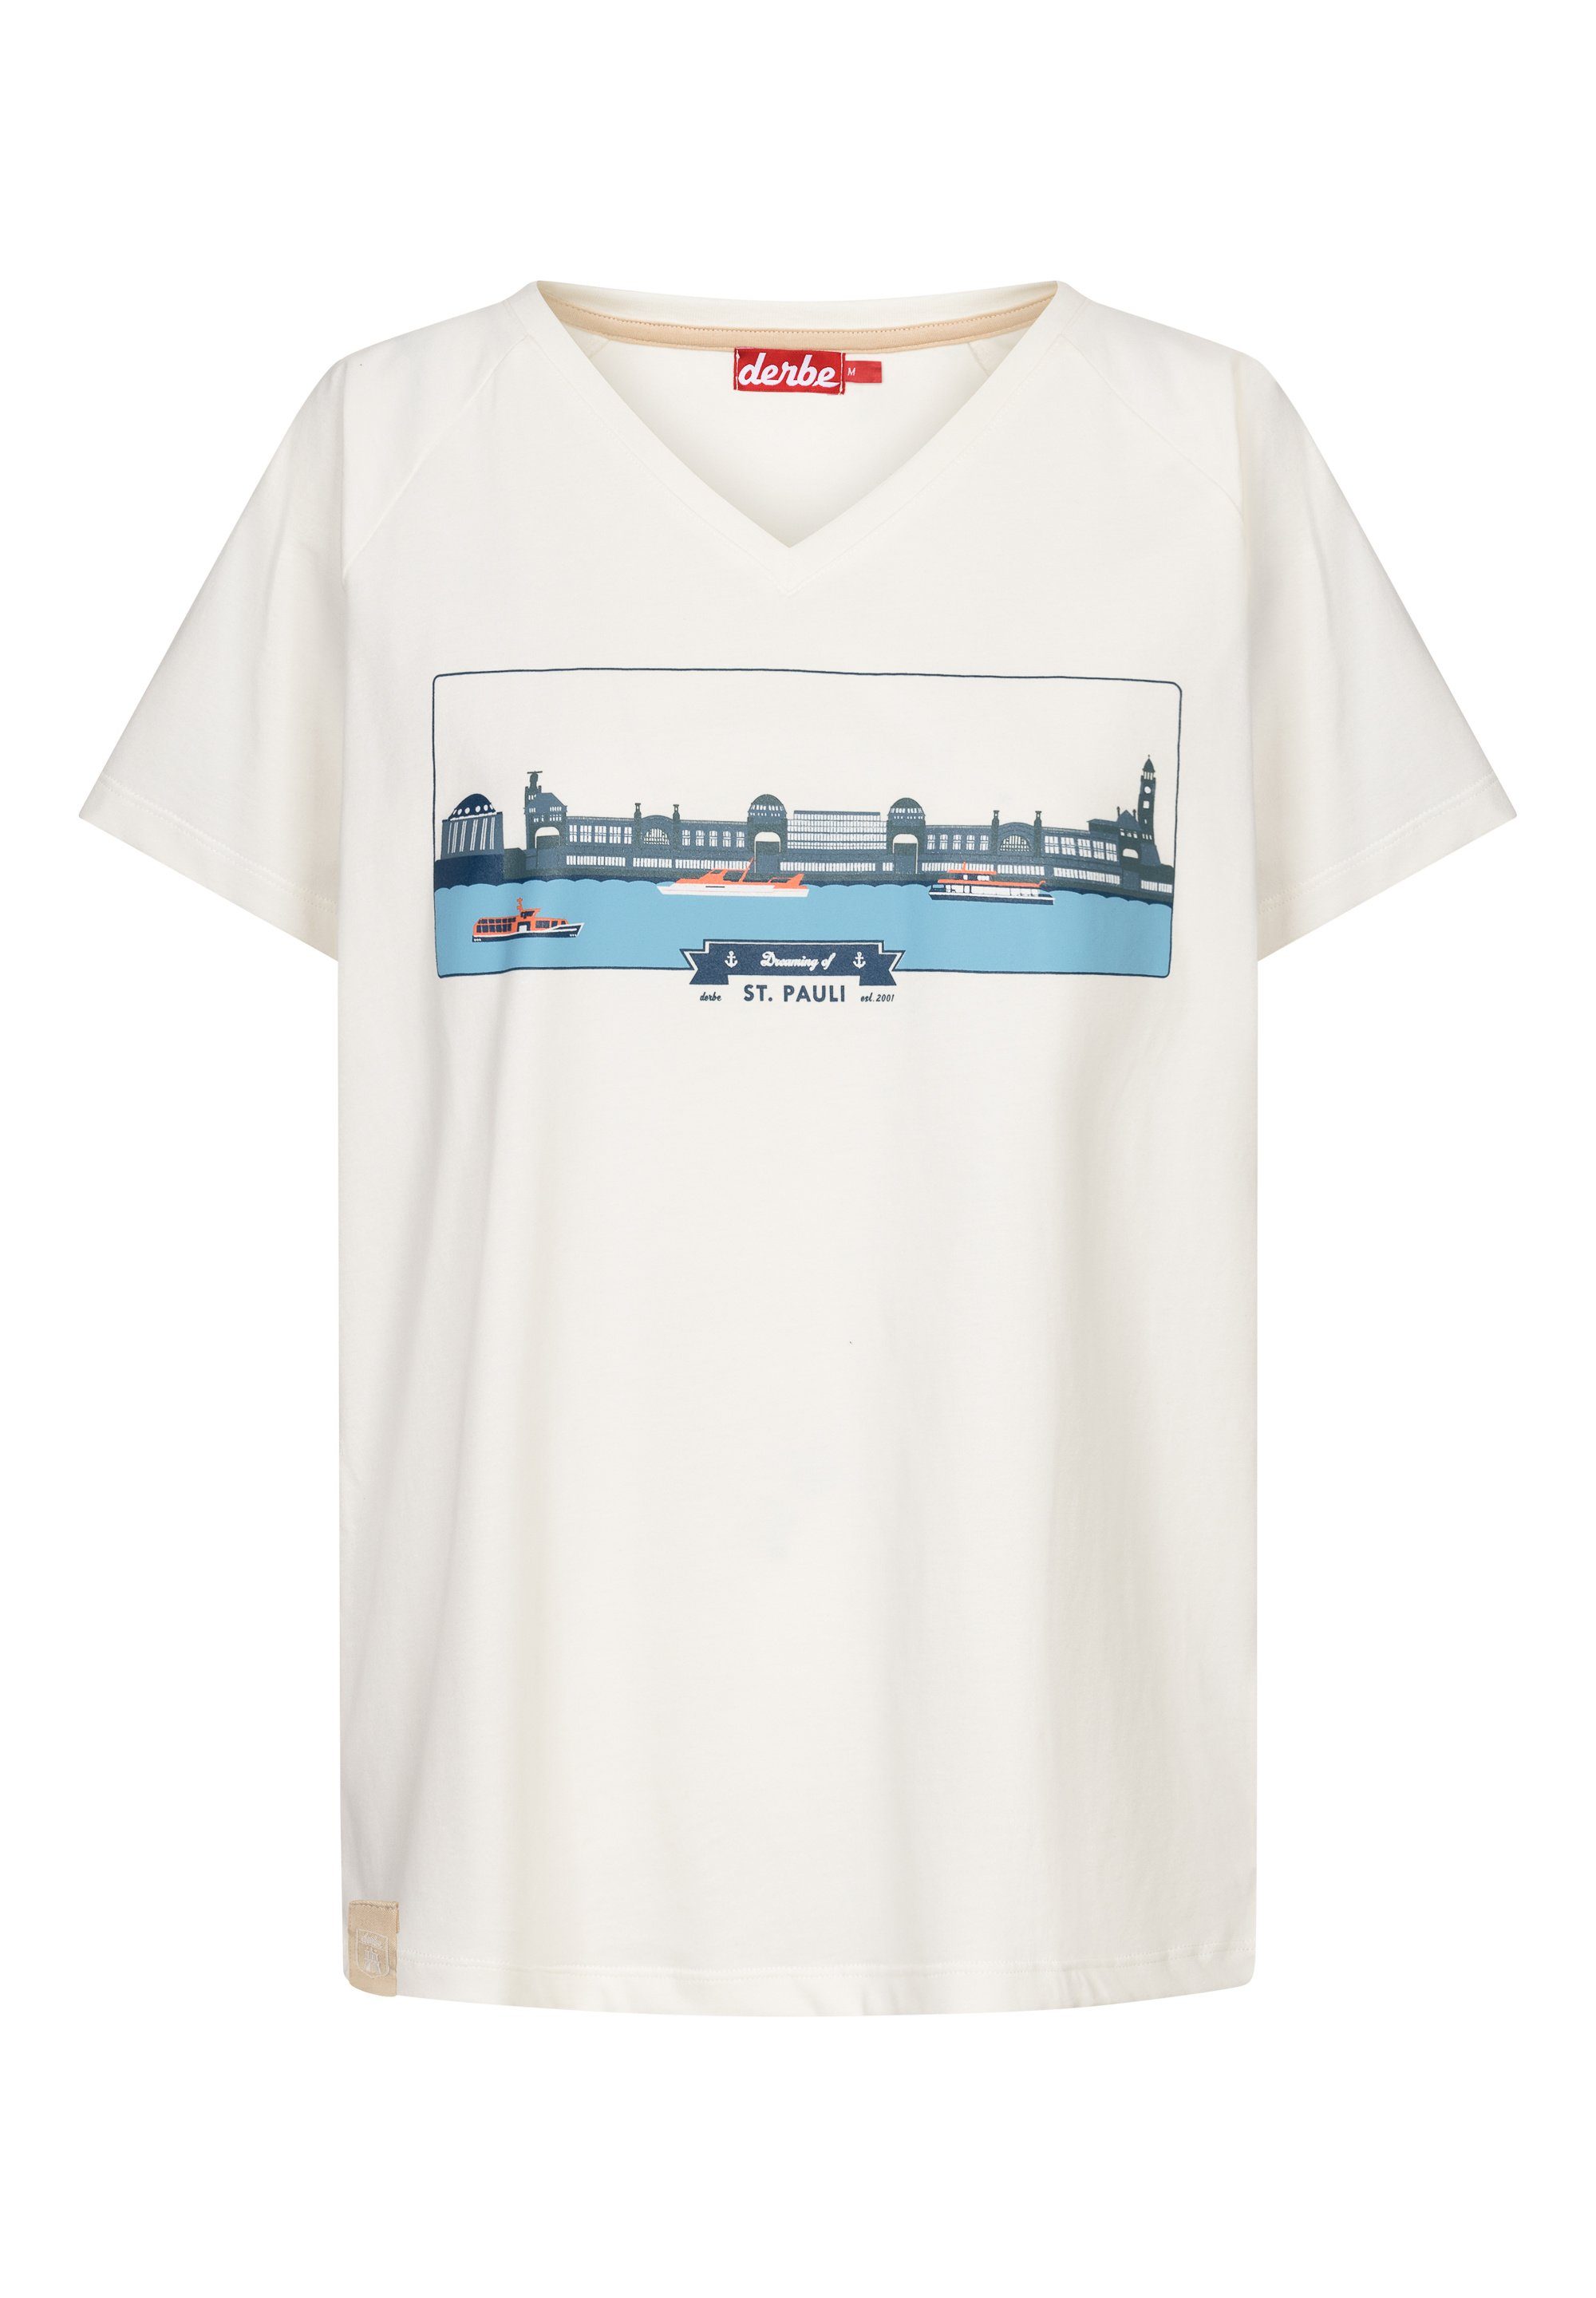 Derbe T-Shirt Baumwolle Made in Portugal, Landungsbrücken